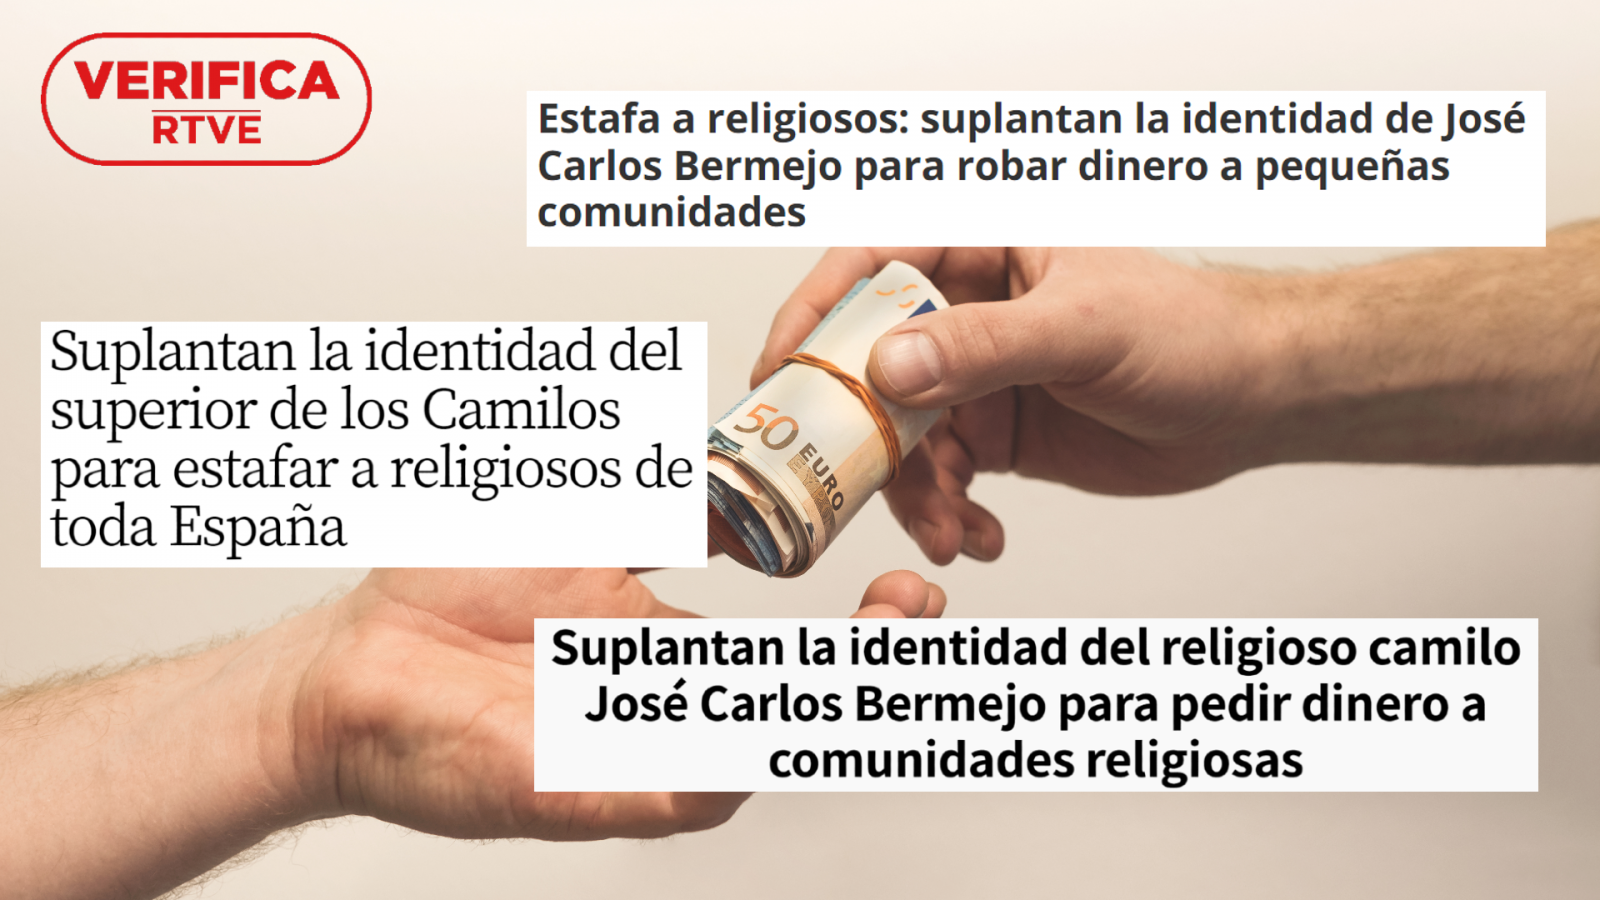 La estafa que afecta a religiosos de toda España suplanta la identidad del superior provincial de los Camilos de España José Carlos Bermejo